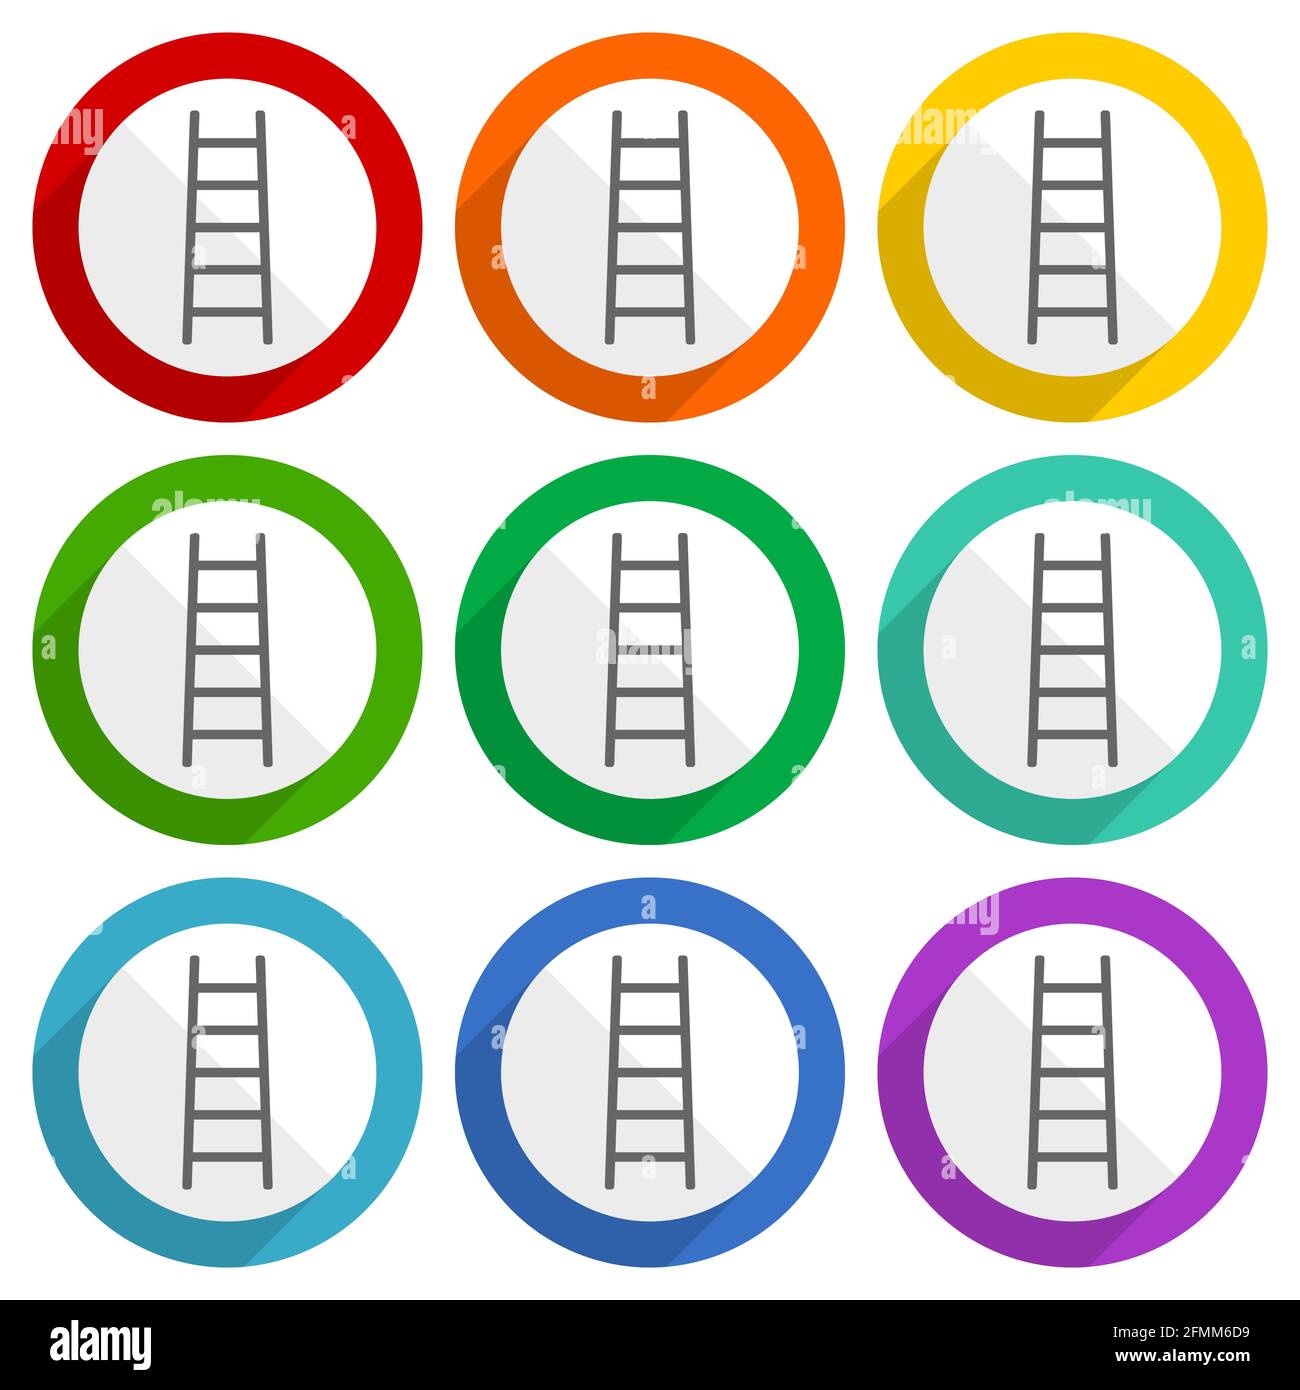 Ladder, STEP, Climb, outil, icônes de vecteur de niveau, jeu de boutons plats colorés pour la conception web et les applications mobiles Illustration de Vecteur